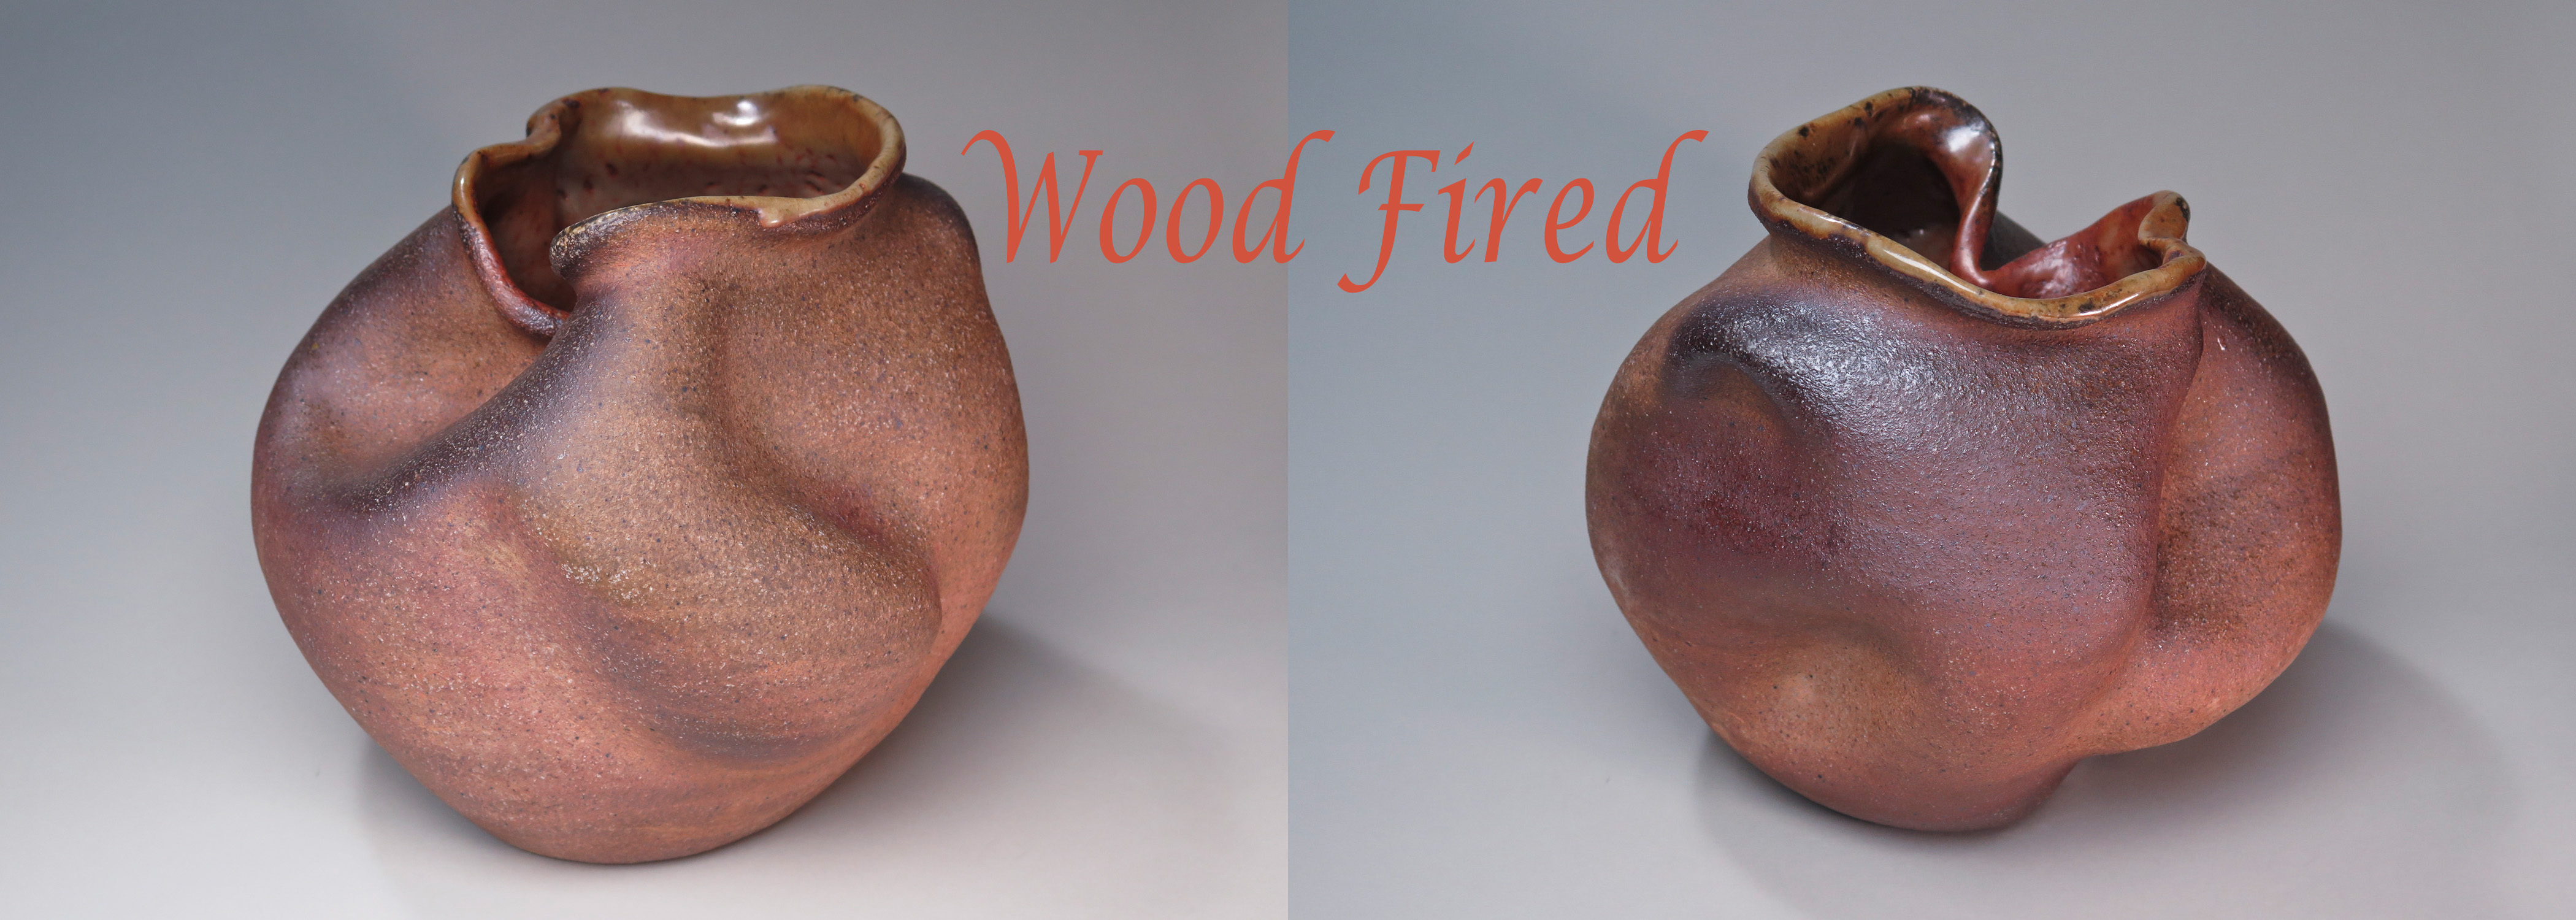 Wood-Fired by Luke Metz